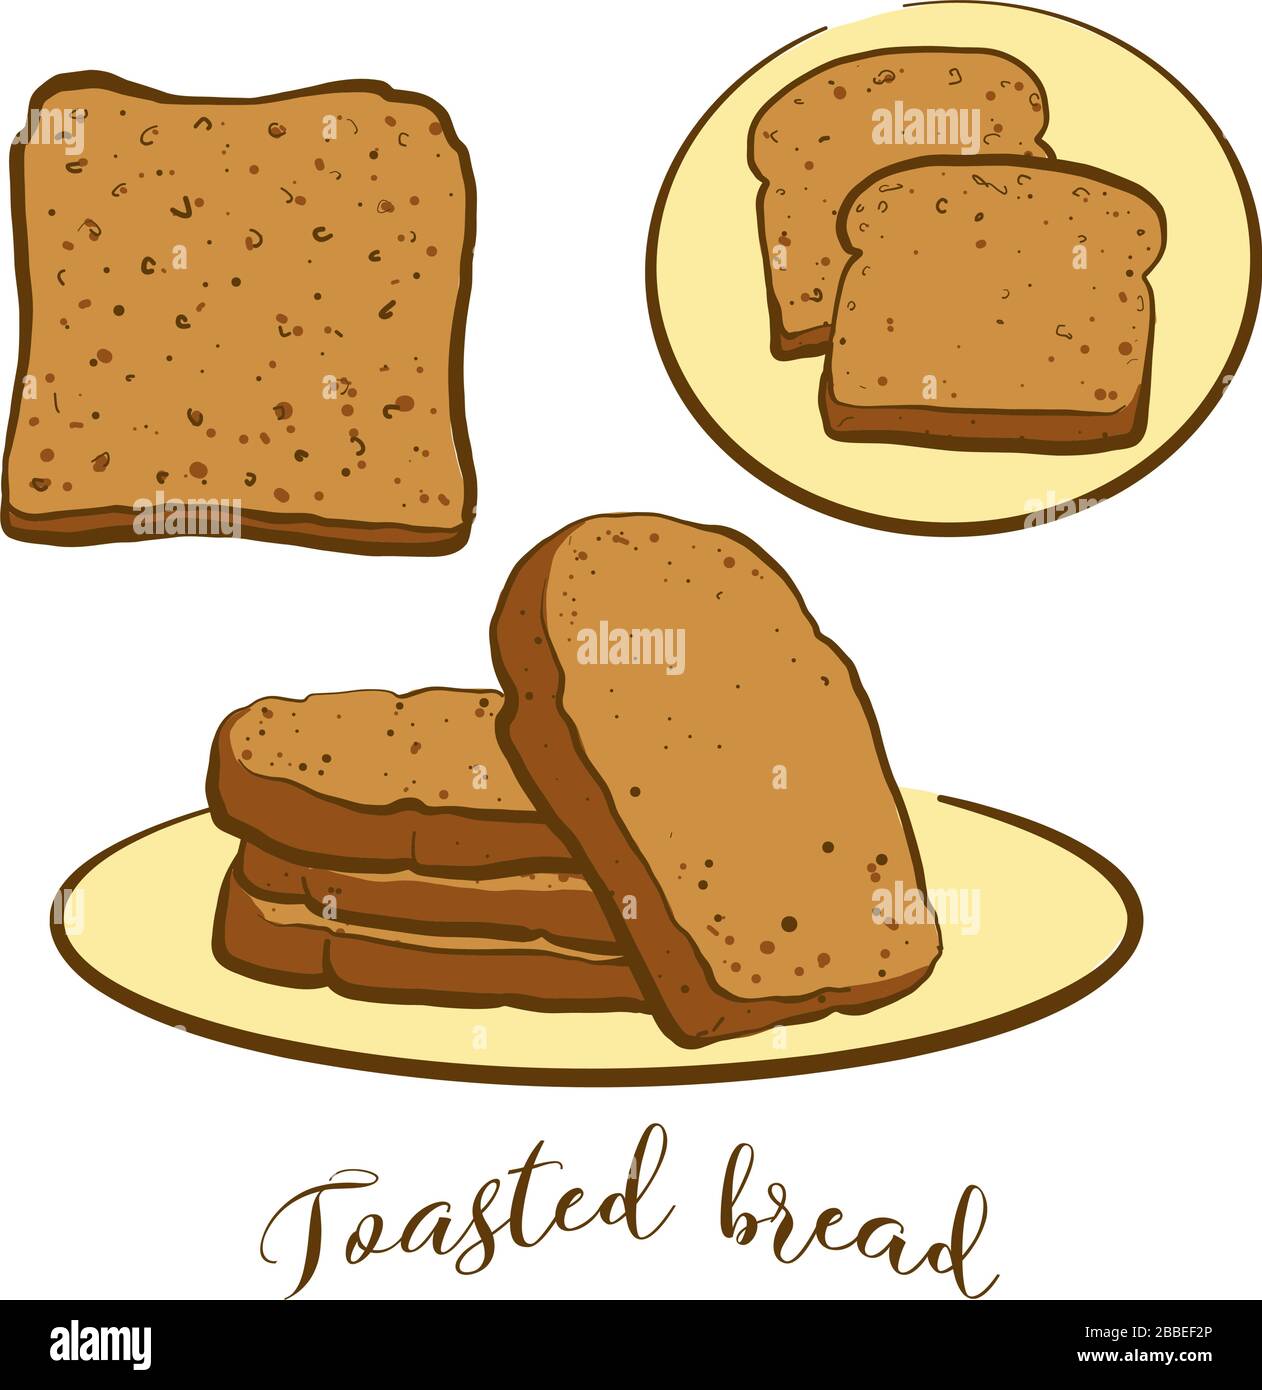 Disegno colorato di pane tostato. Illustrazione vettoriale di alimento di brindisi, conosciuto solitamente in Gran Bretagna. Schizzi di pane colorati. Illustrazione Vettoriale